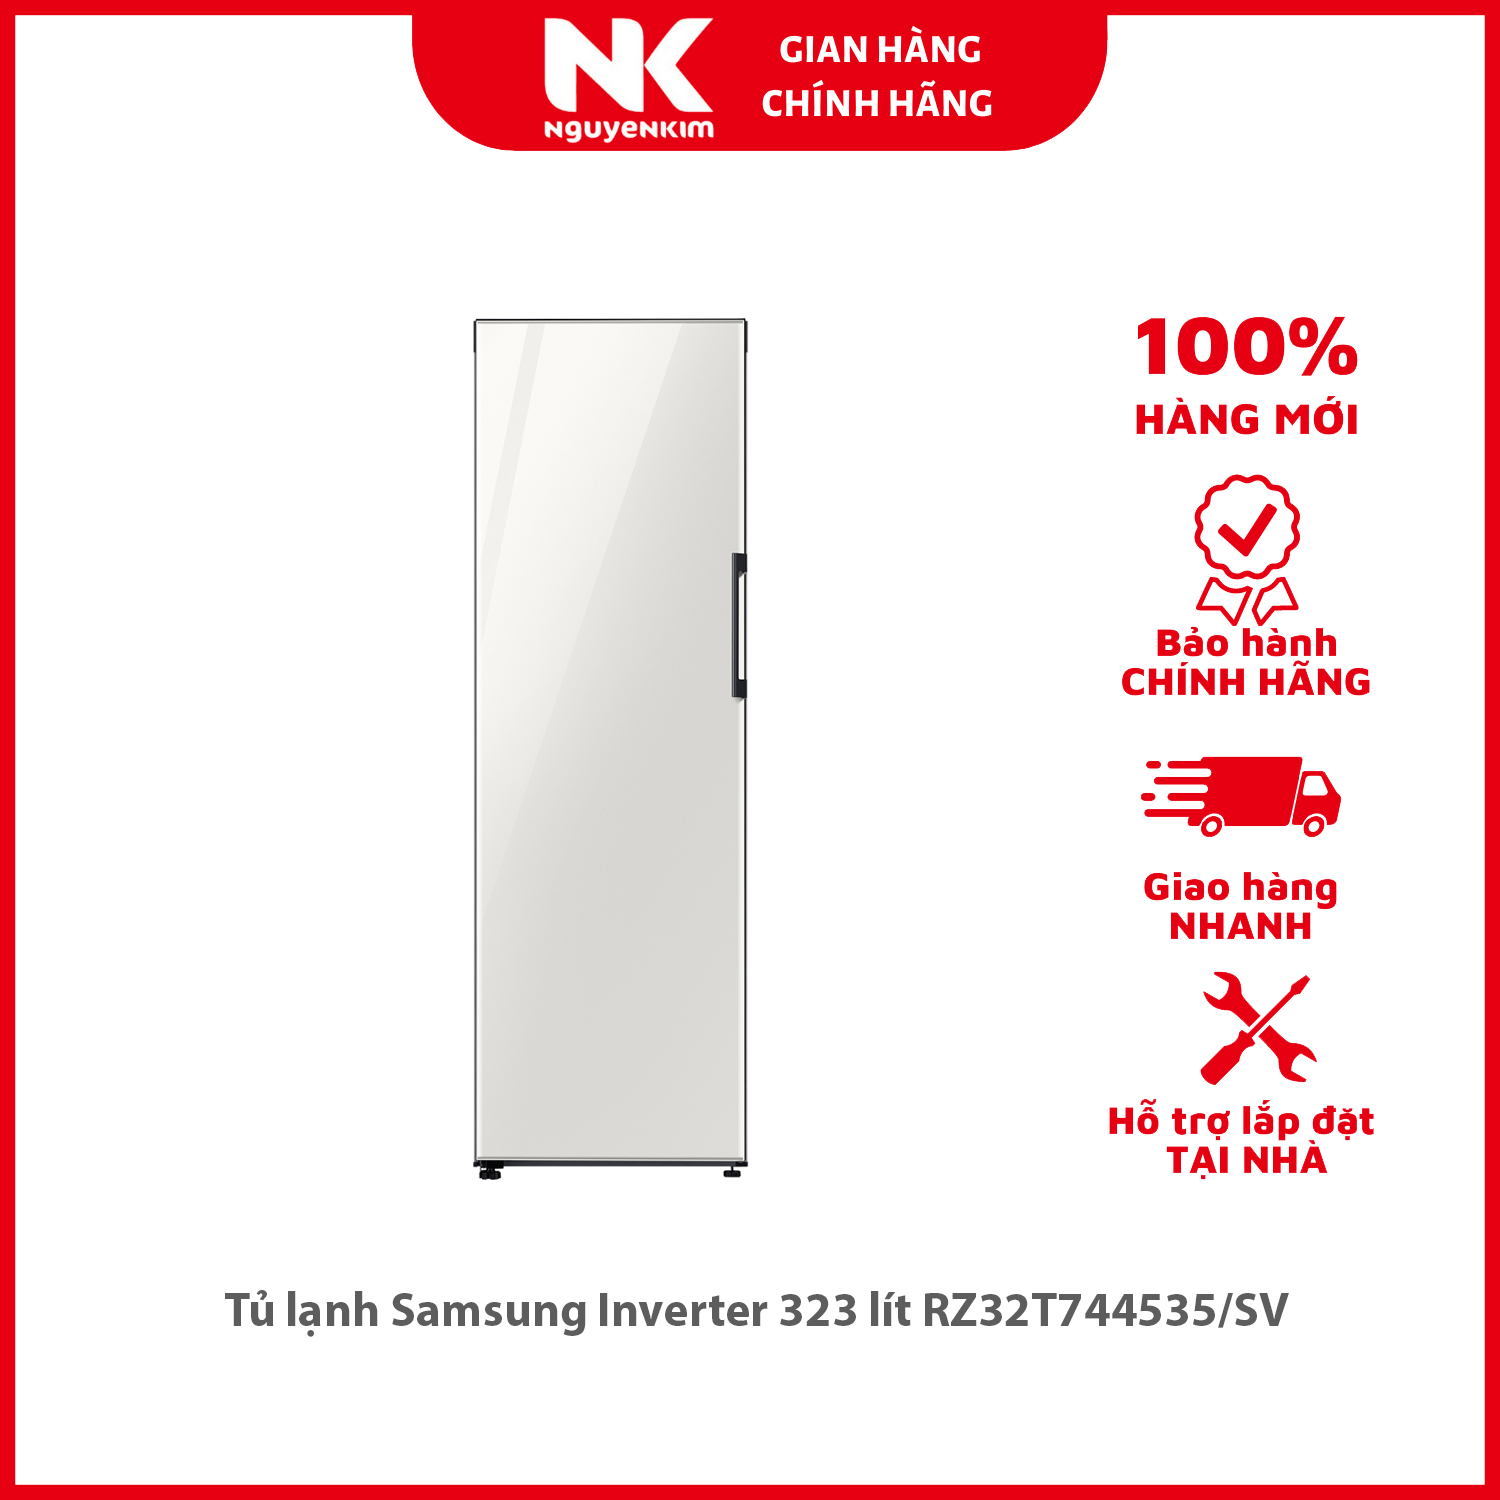 Tủ lạnh Samsung Inverter 323 lít RZ32T744535/SV - Hàng chính hãng [Giao hàng toàn quốc]